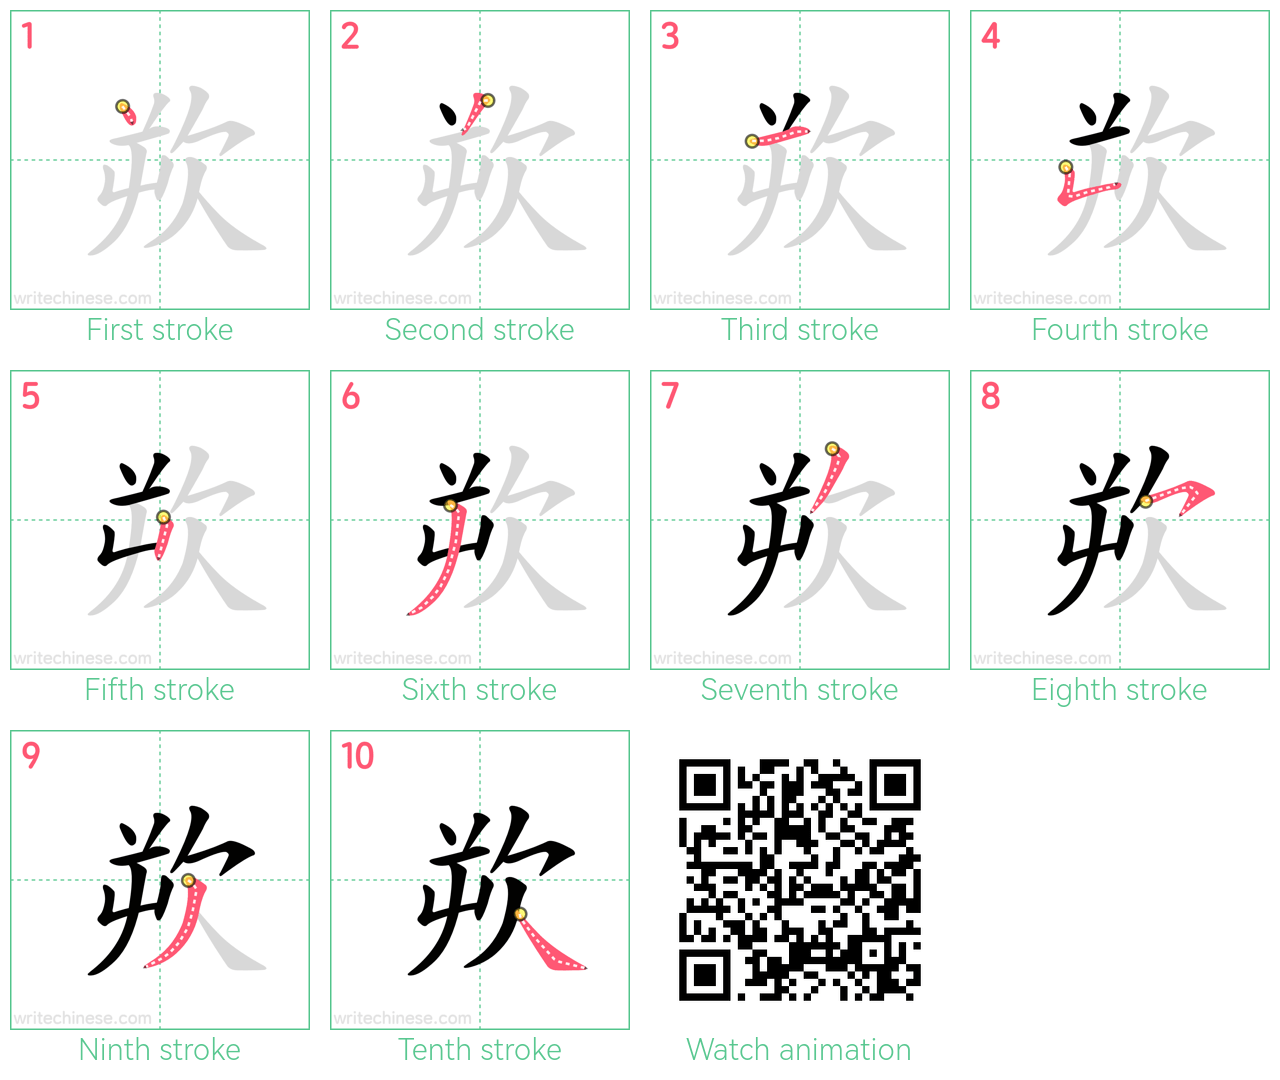 欮 step-by-step stroke order diagrams